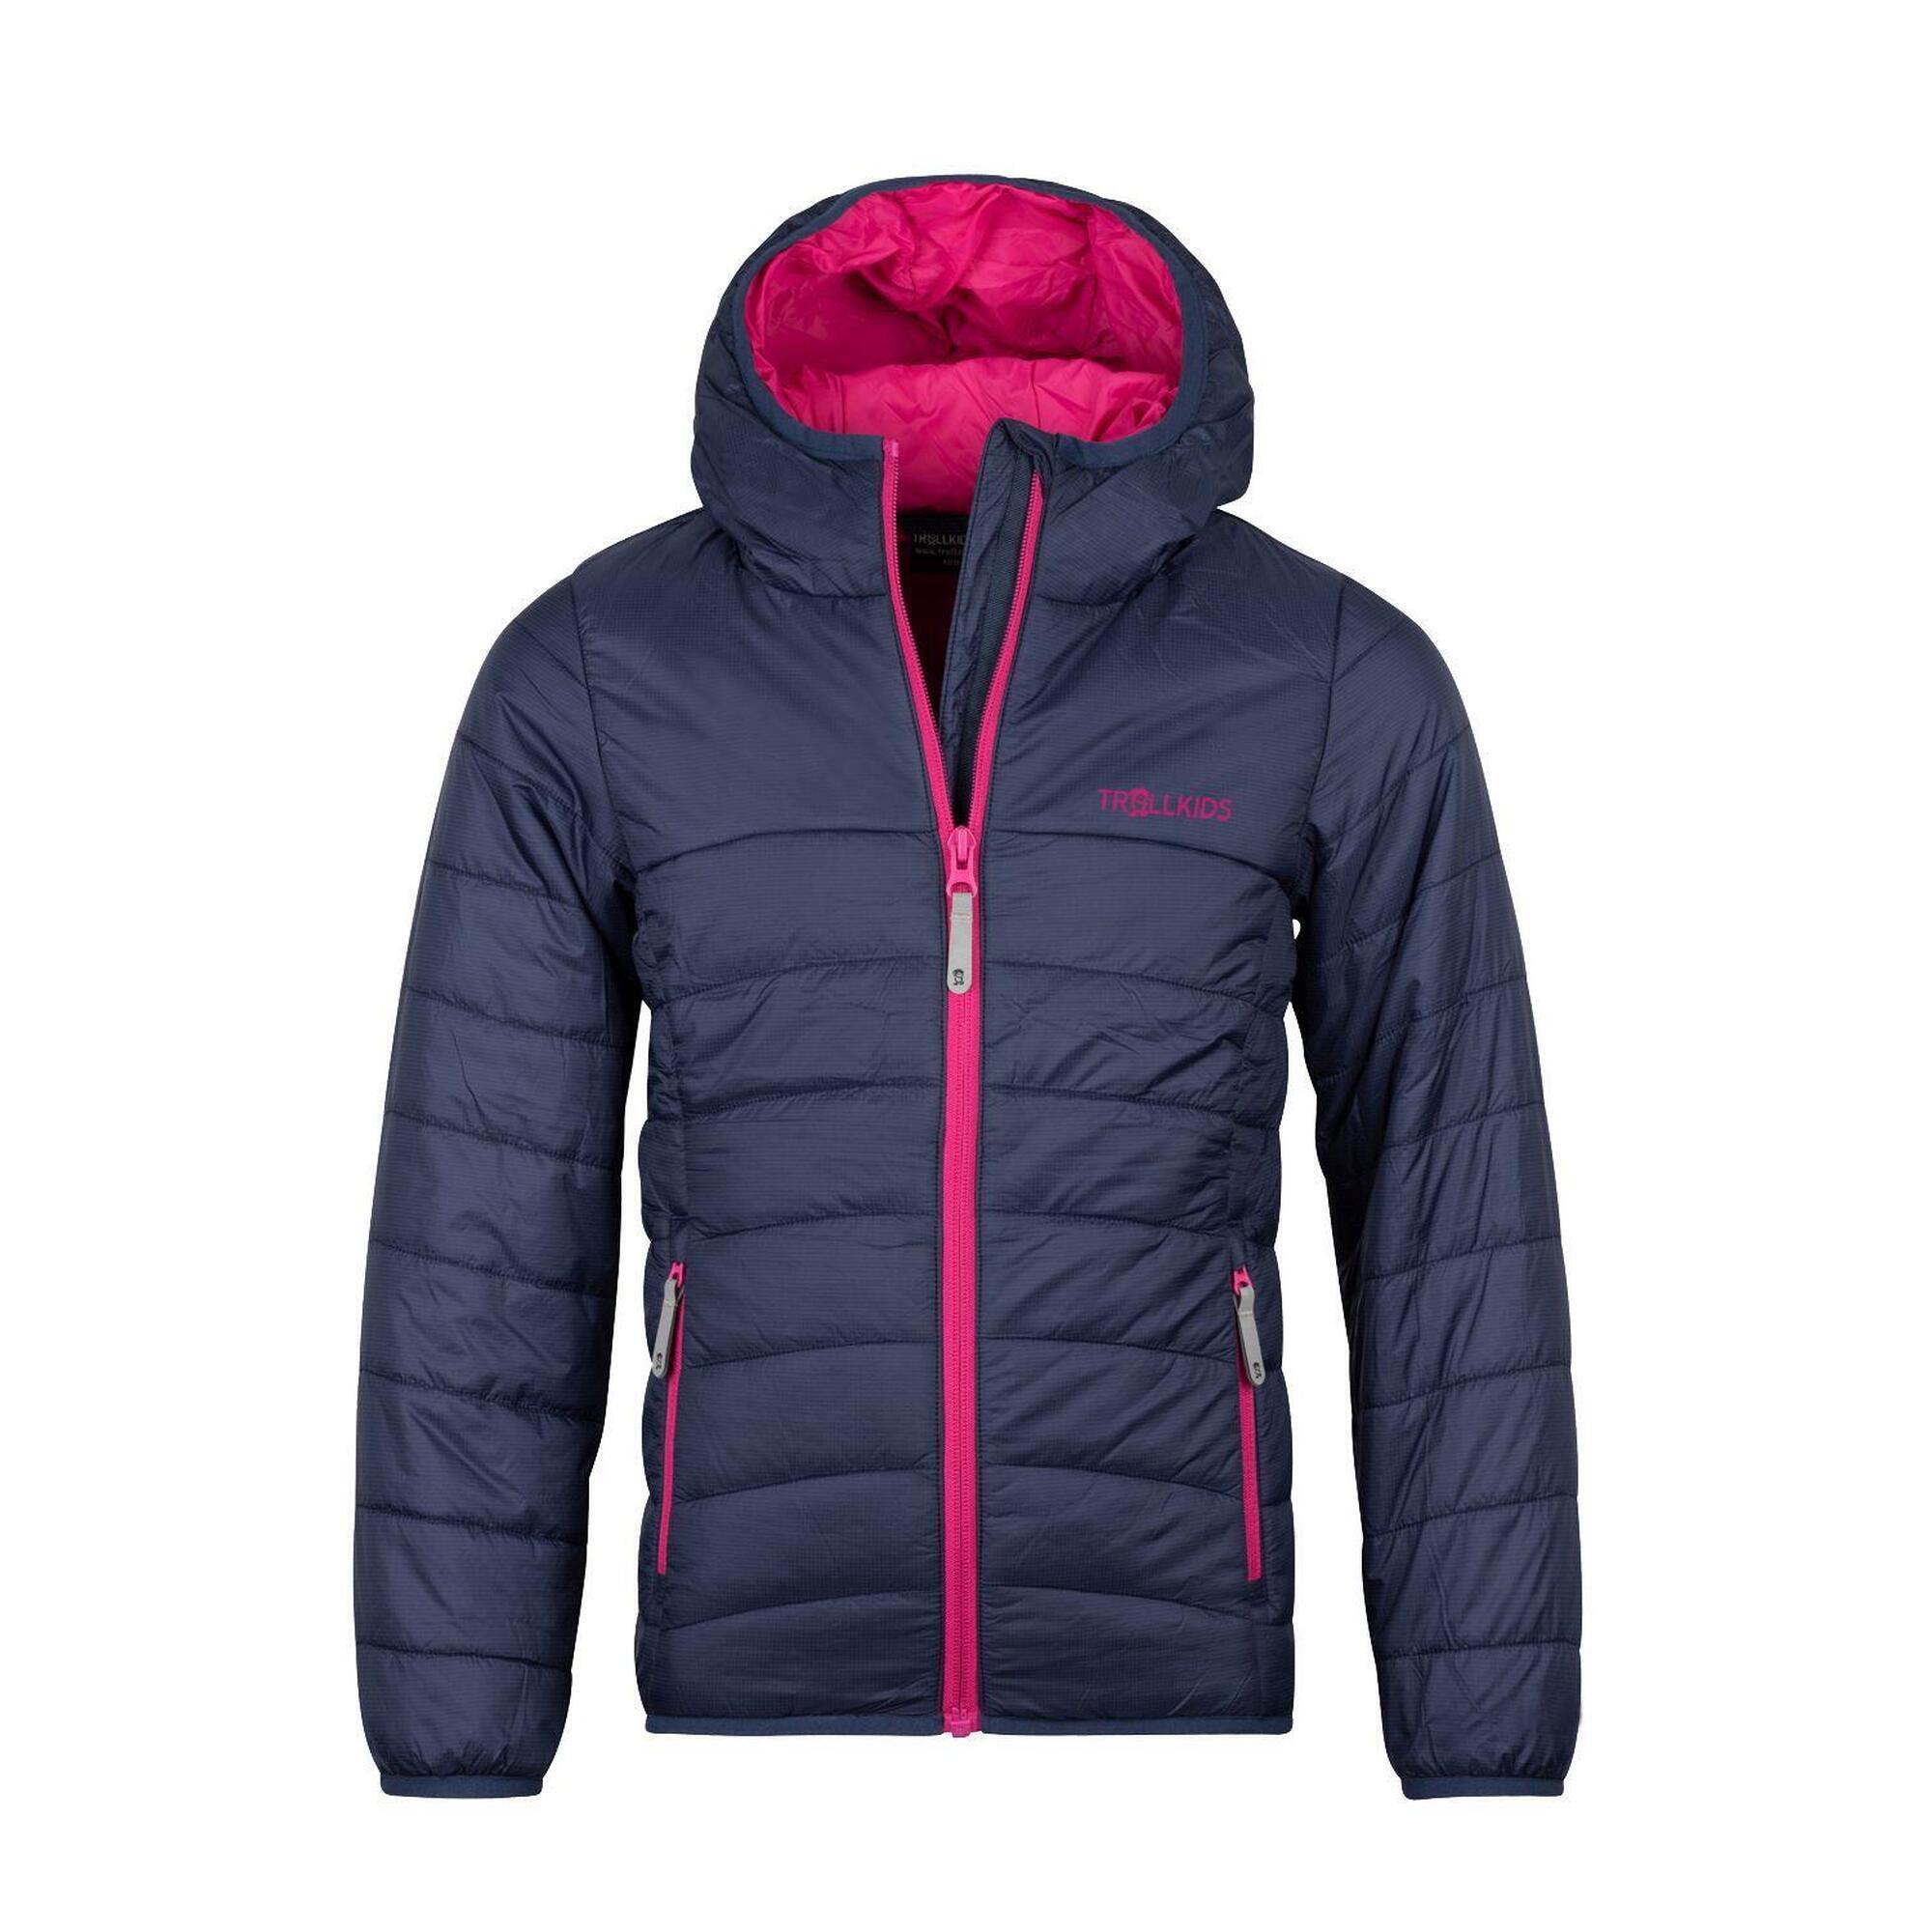 Куртка стеганая Trollkids Eikefjord для девочки, темно-синий/фиолетовый куртка стеганая средней длины с пришитым капюшоном зимняя l синий